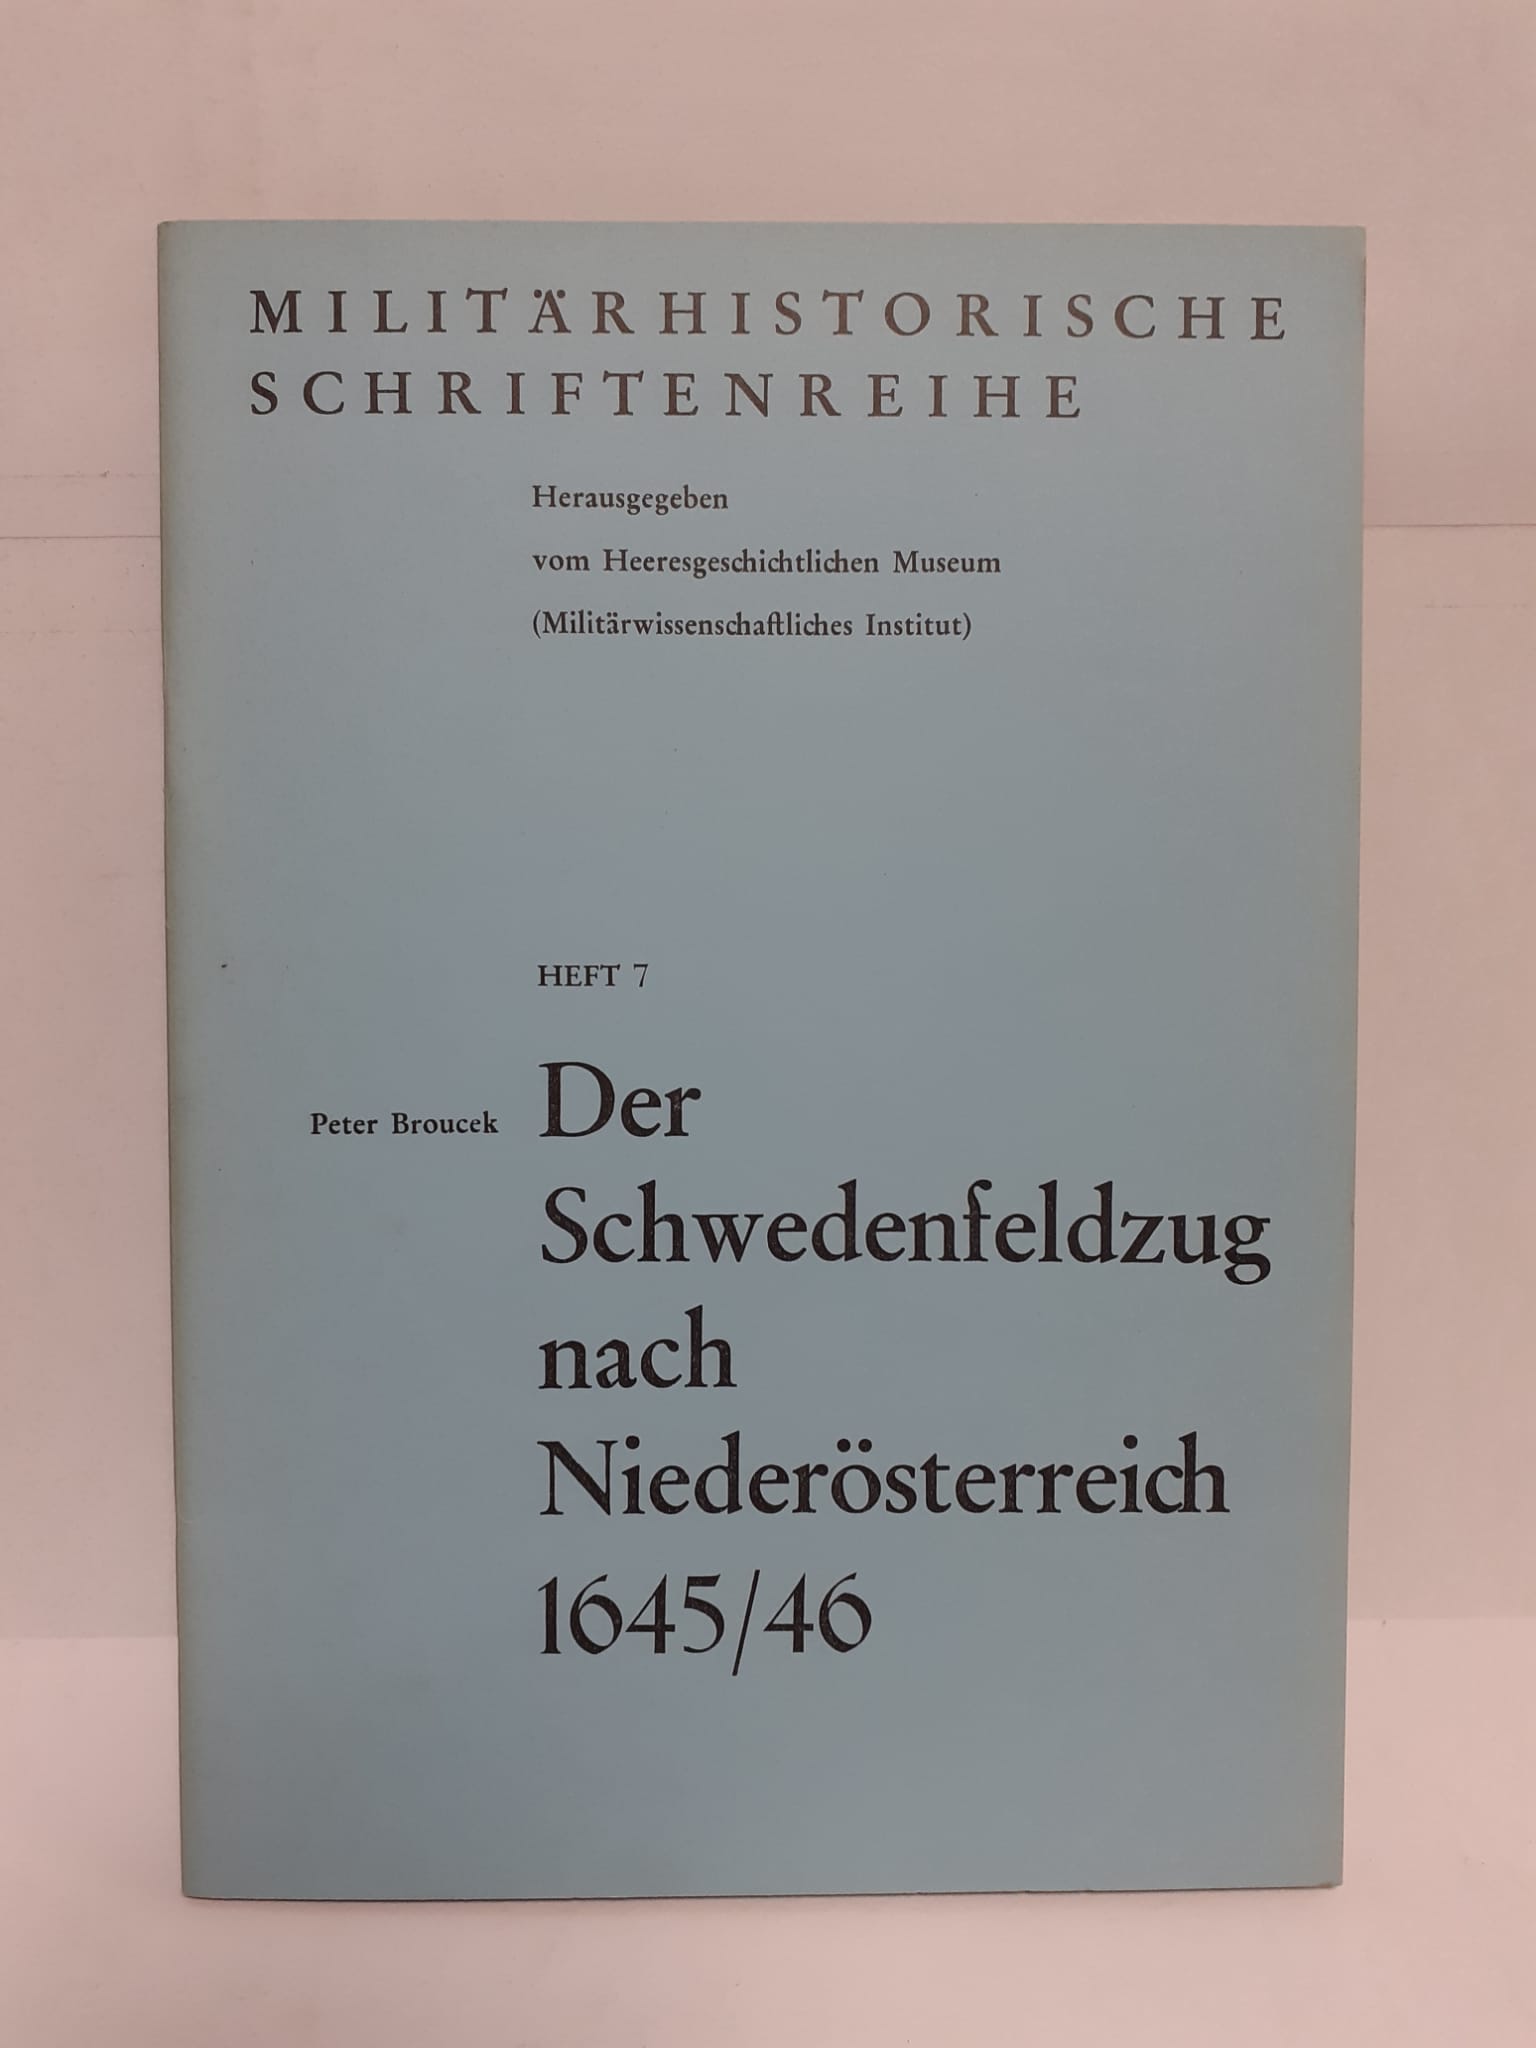 Der Schwedenfeldzug nach Niederösterreich 1645. Militärhistorische Schriftenreihe, Heft 7 46. - Broucek, Peter und Heeresgeschichtliche Museum (Hrsg.).